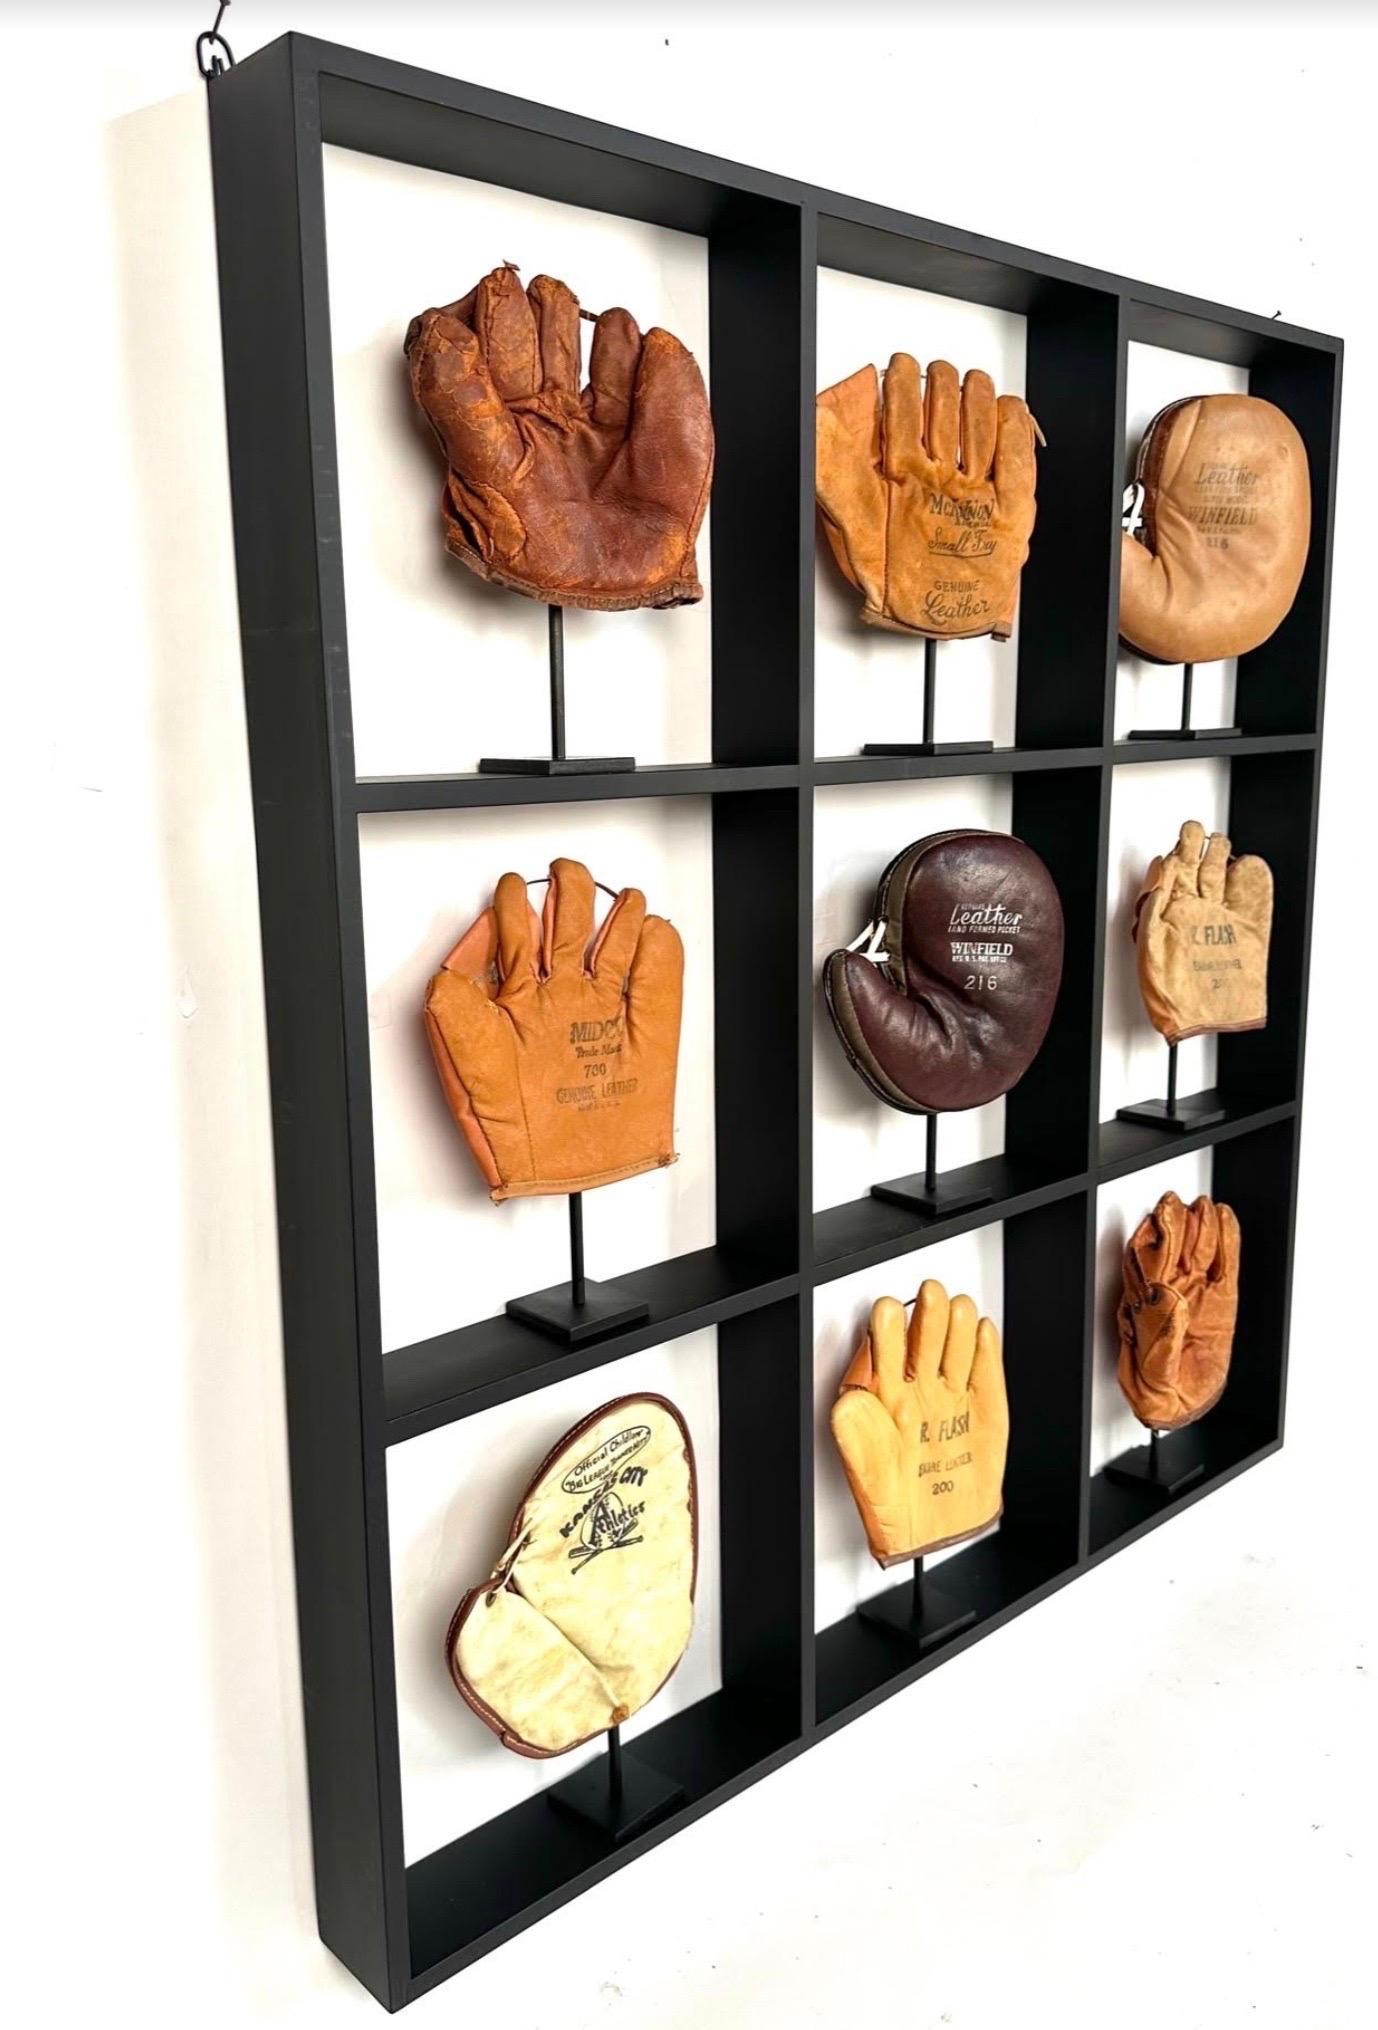 Eine Sammlung von 9 seltenen, kleinen, antiken Kinder-Baseballhandschuhen aus den Jahren 1920 bis 1960. Sie werden in einer schwarz lackierten Ahorn-Schattenbox mit speziell angefertigten Stahlständern ausgestellt. 
Das Display misst 32